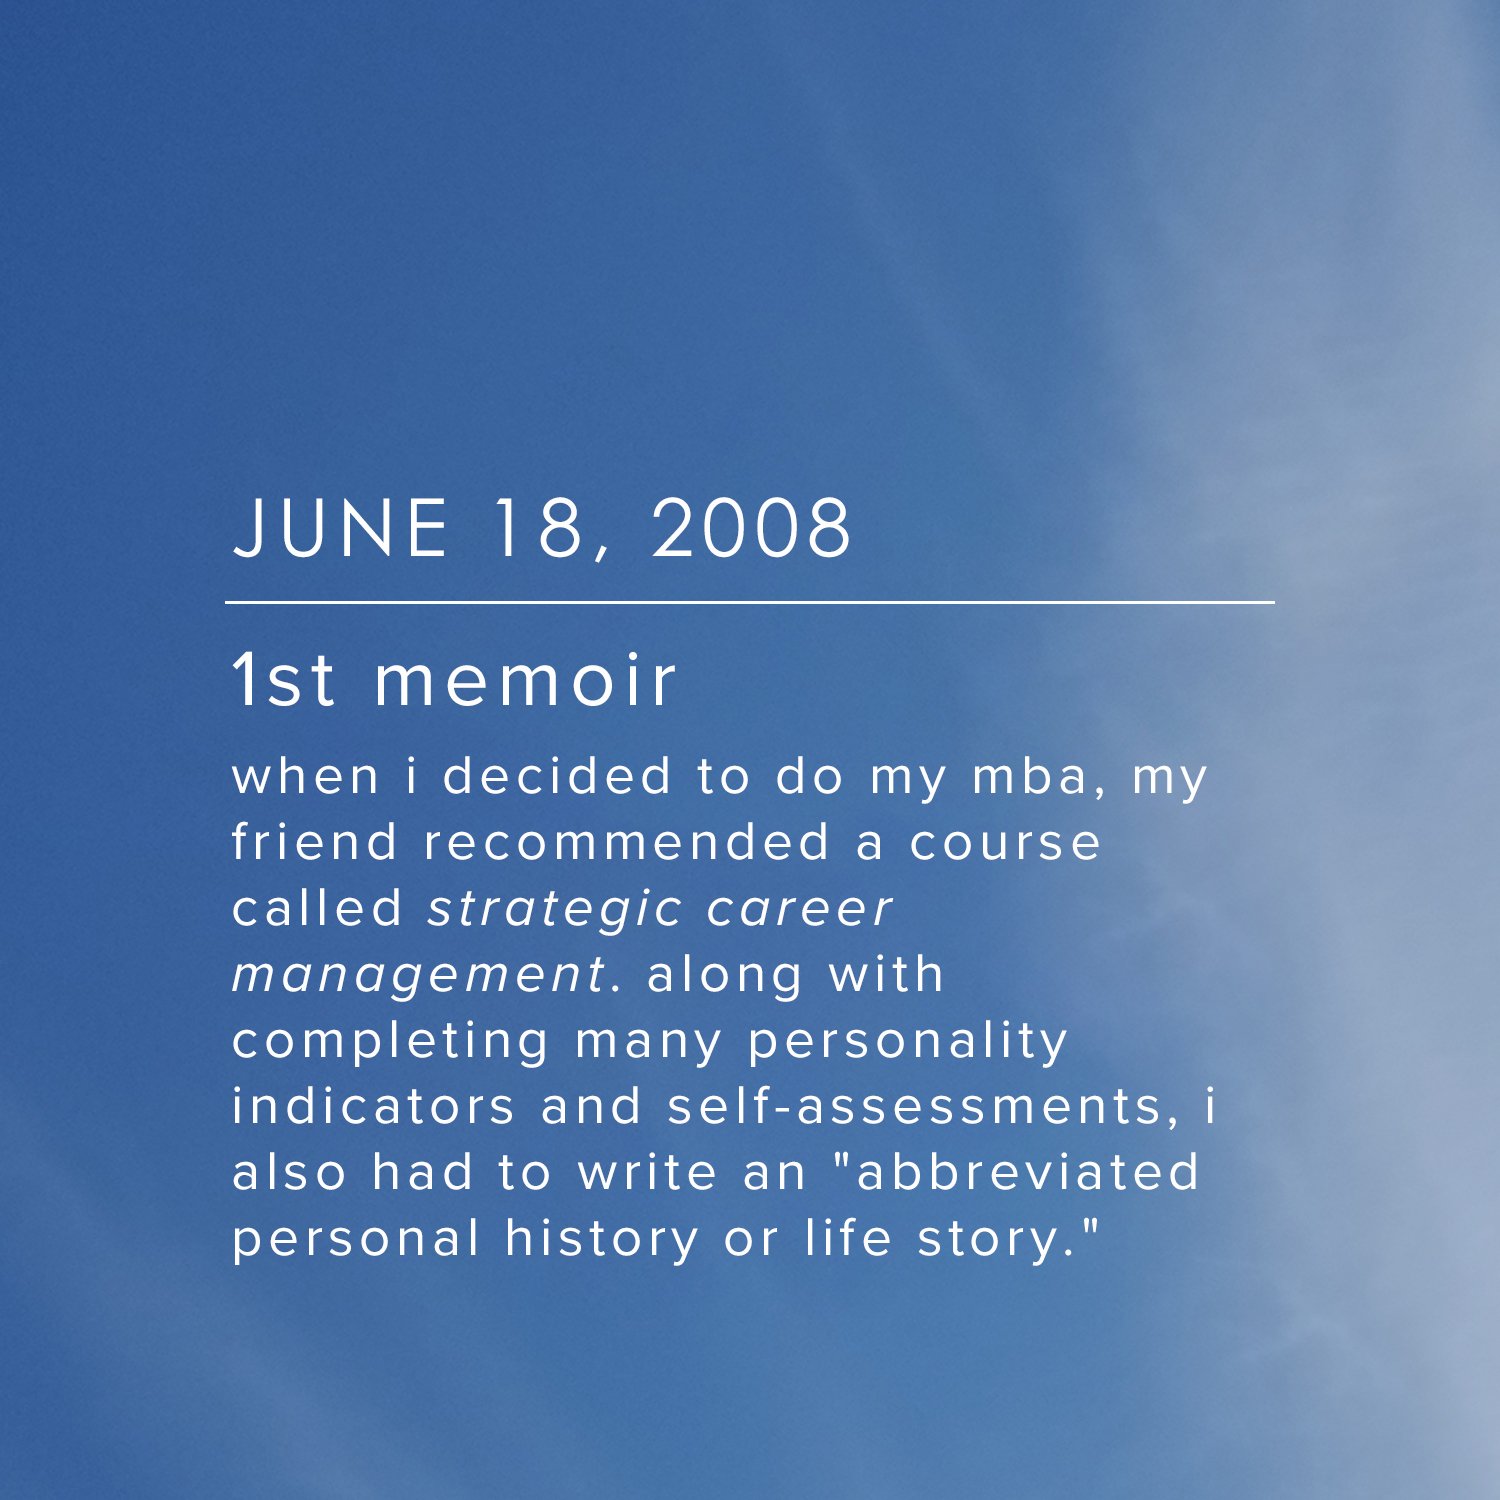 June 18, 2008 - 1st memoir